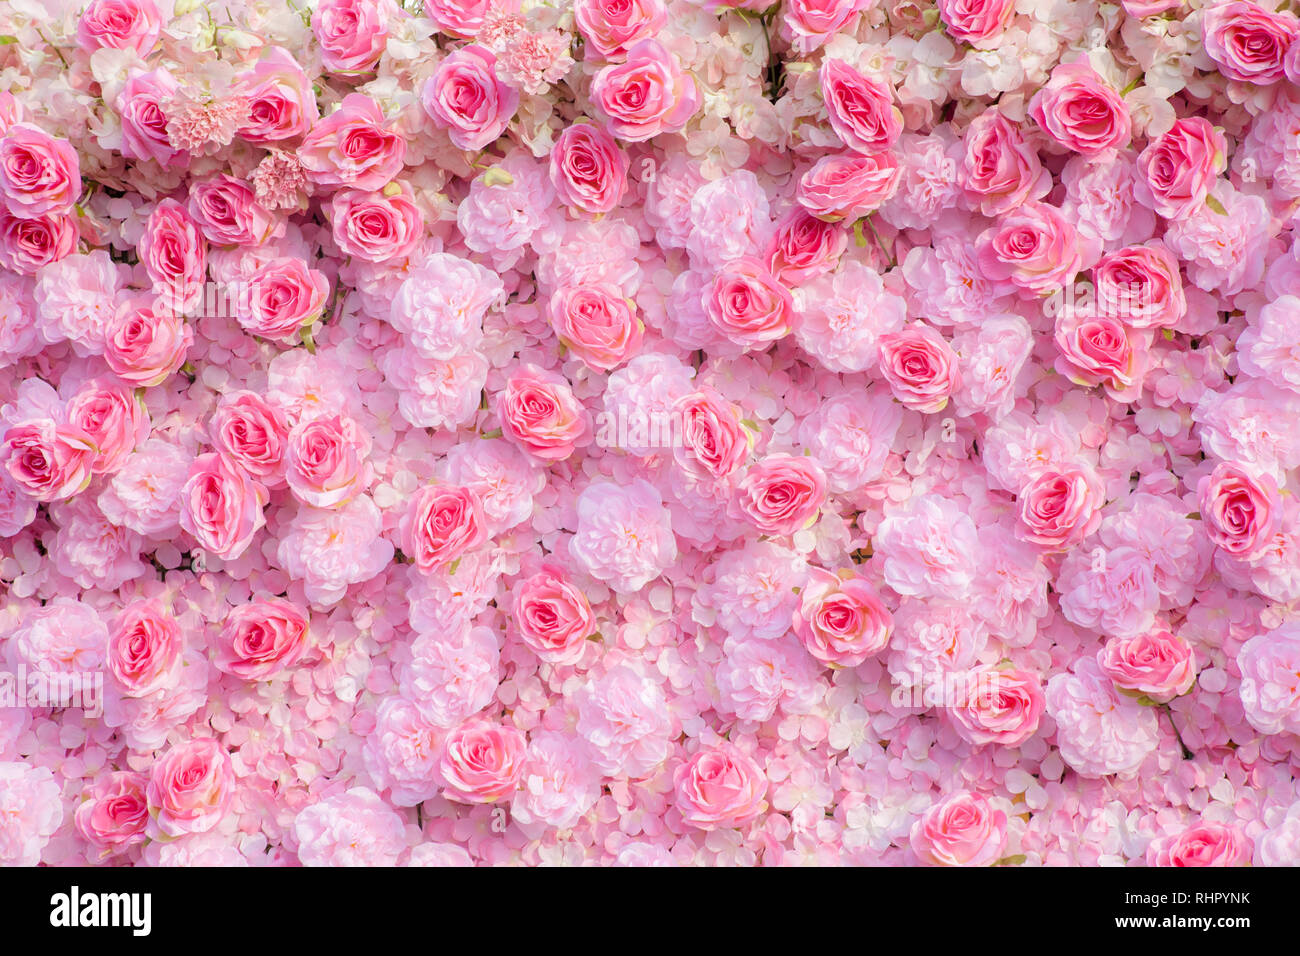 Hình nền hoa hồng: Hình nền hoa hồng đẹp sẽ giúp bạn tạo một không gian thơ mộng và tinh tế cho màn hình của mình. Nhiều hình nền hoa hồng với nhiều màu sắc khác nhau sẽ đáp ứng được tất cả các nhu cầu cá nhân của bạn. Hãy hòa mình vào vẻ đẹp hoa hồng và cảm nhận được cảm xúc sâu sắc từ câu chuyện của từng bức hình.